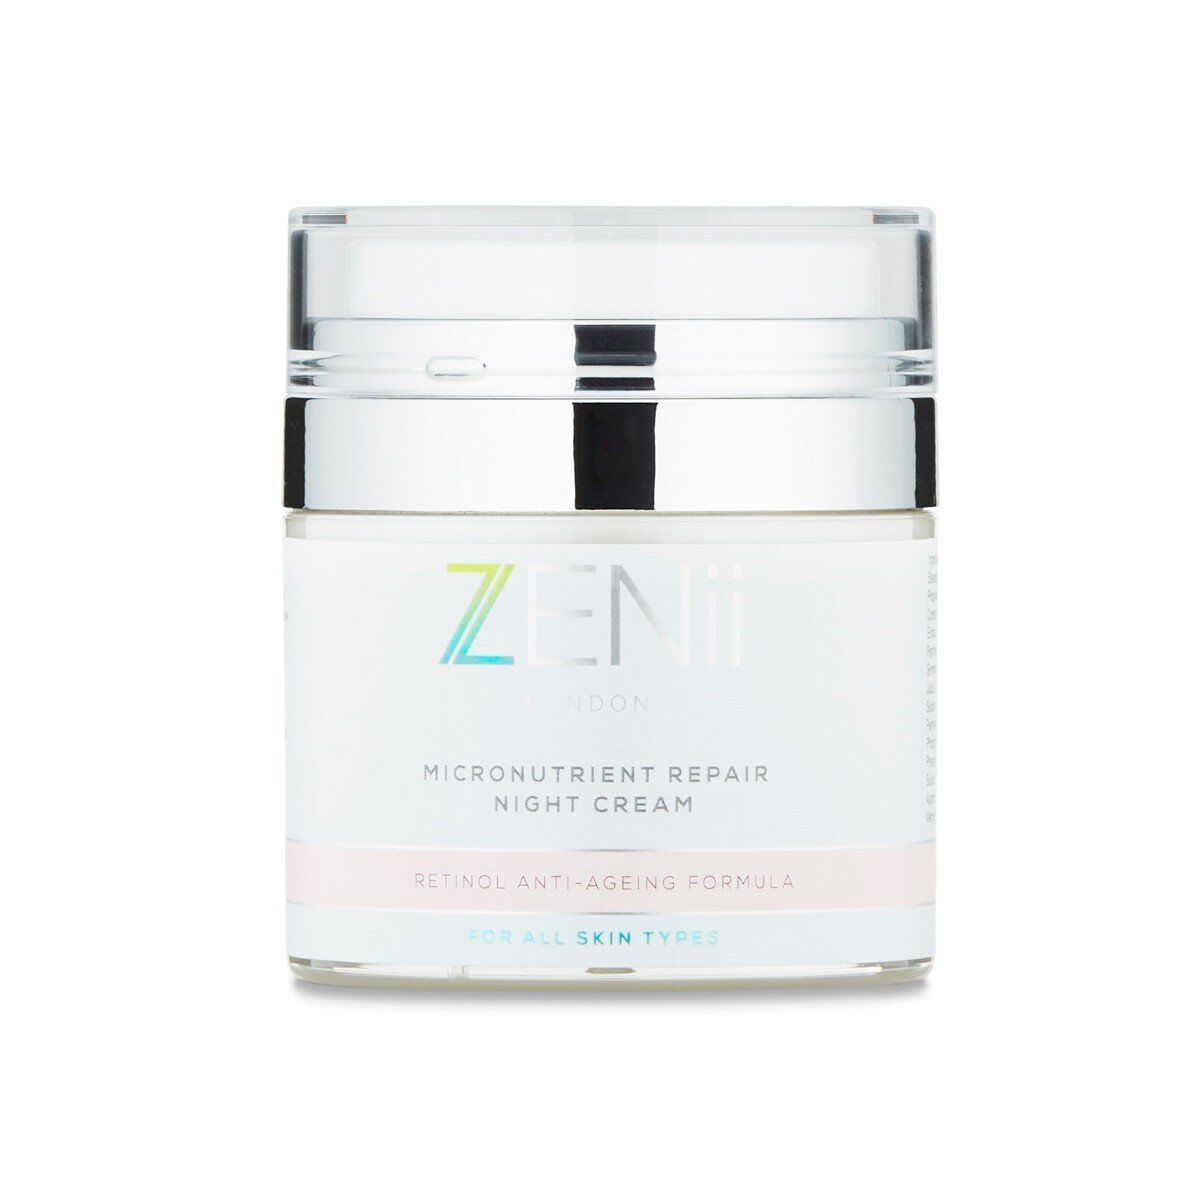 ZENii - Micronutrient Repair Night Cream